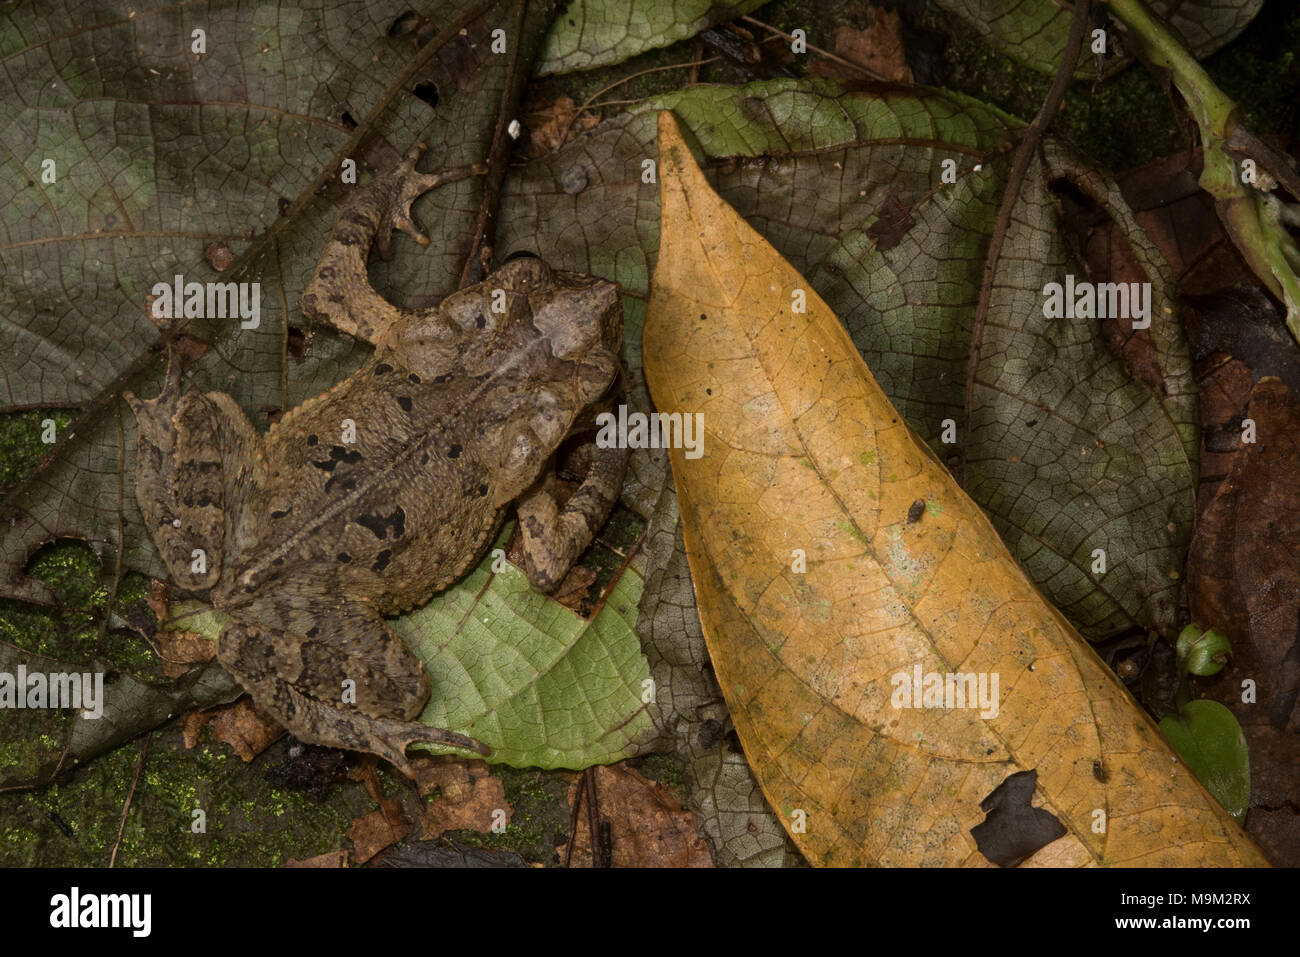 Eine südamerikanische Erdkröte (Rhinella margaritifera) Hidden in plain Sight inmitten der Blattsänfte. Stockfoto